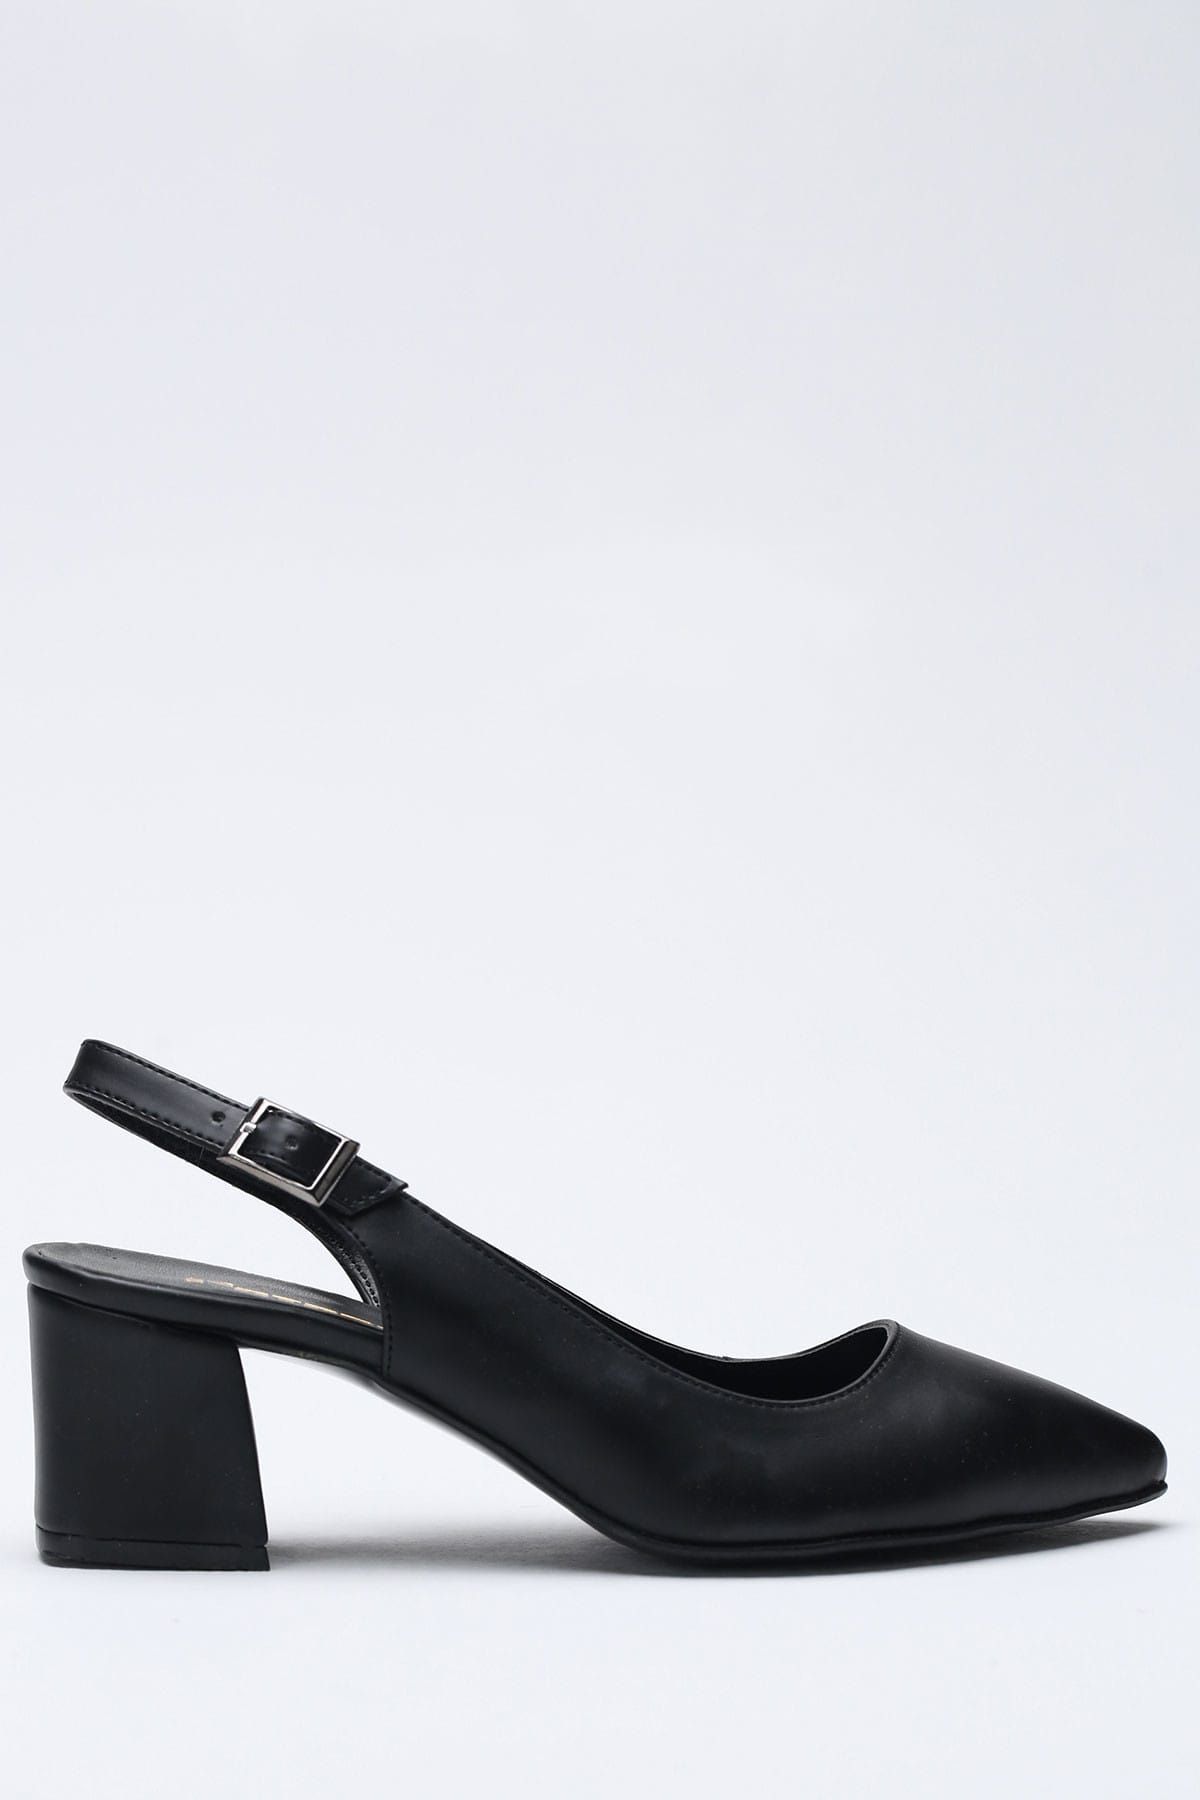 Ayakkabı Modası Siyah Kadın Topuklu Ayakkabı 1938-9-0120